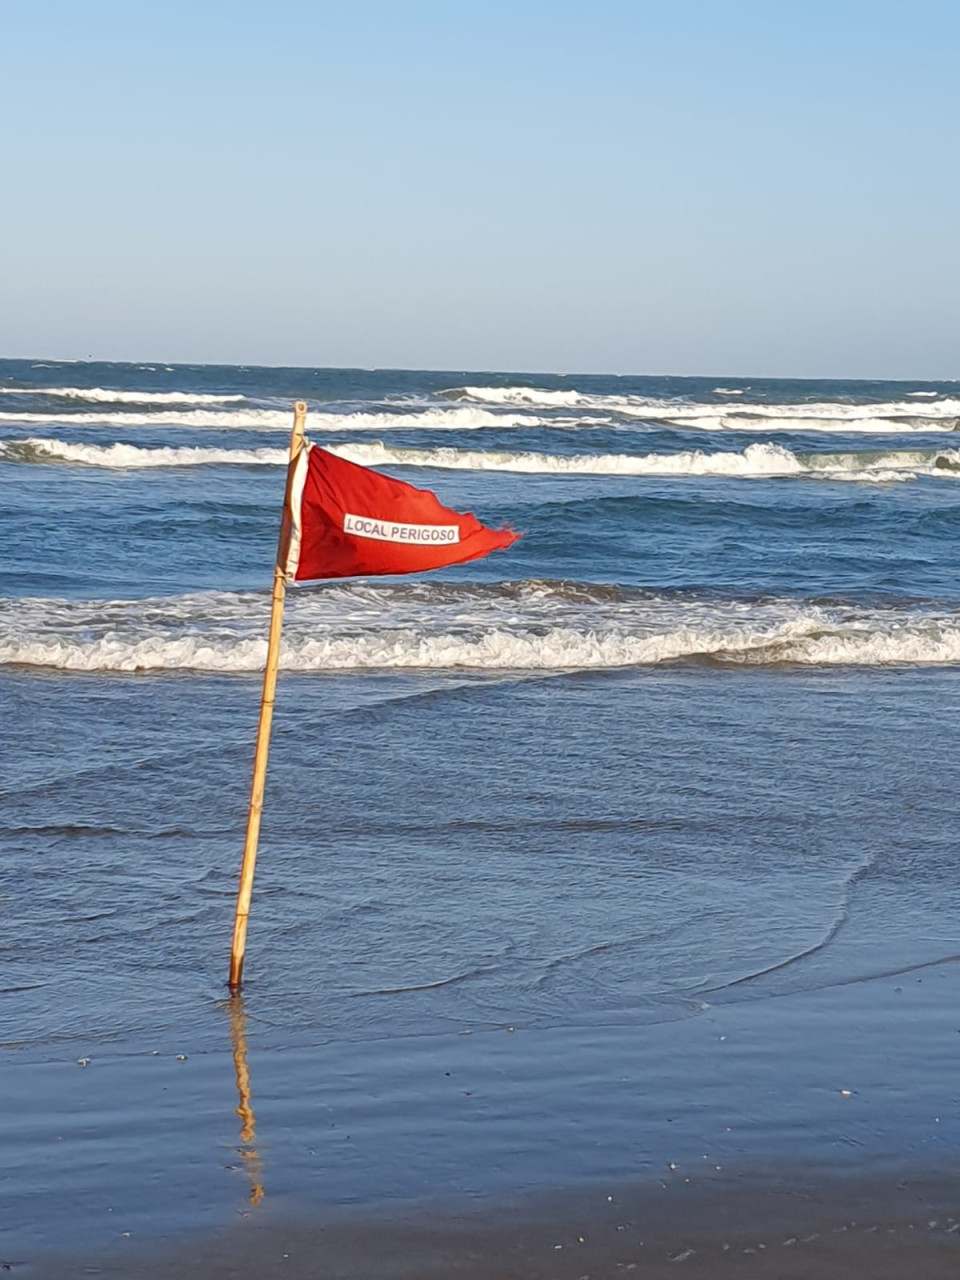 Bandeira triangular vermelha, com inscrição Local Perigoso, em branco,  indica risco aos banhistas por causa das correntes de retorno das águas.